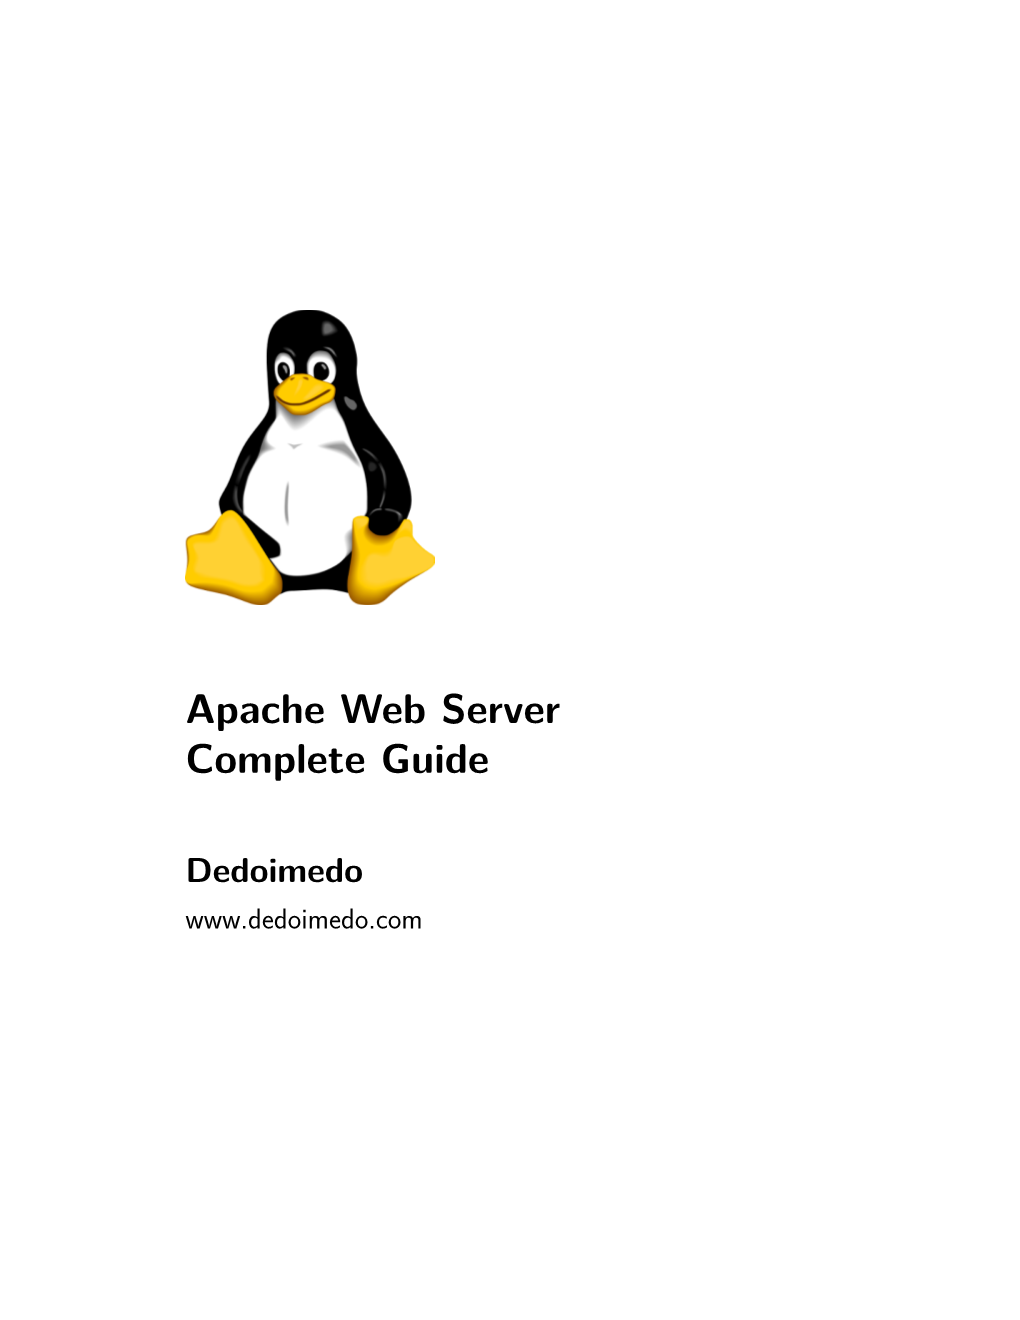 Apache Web Server Complete Guide